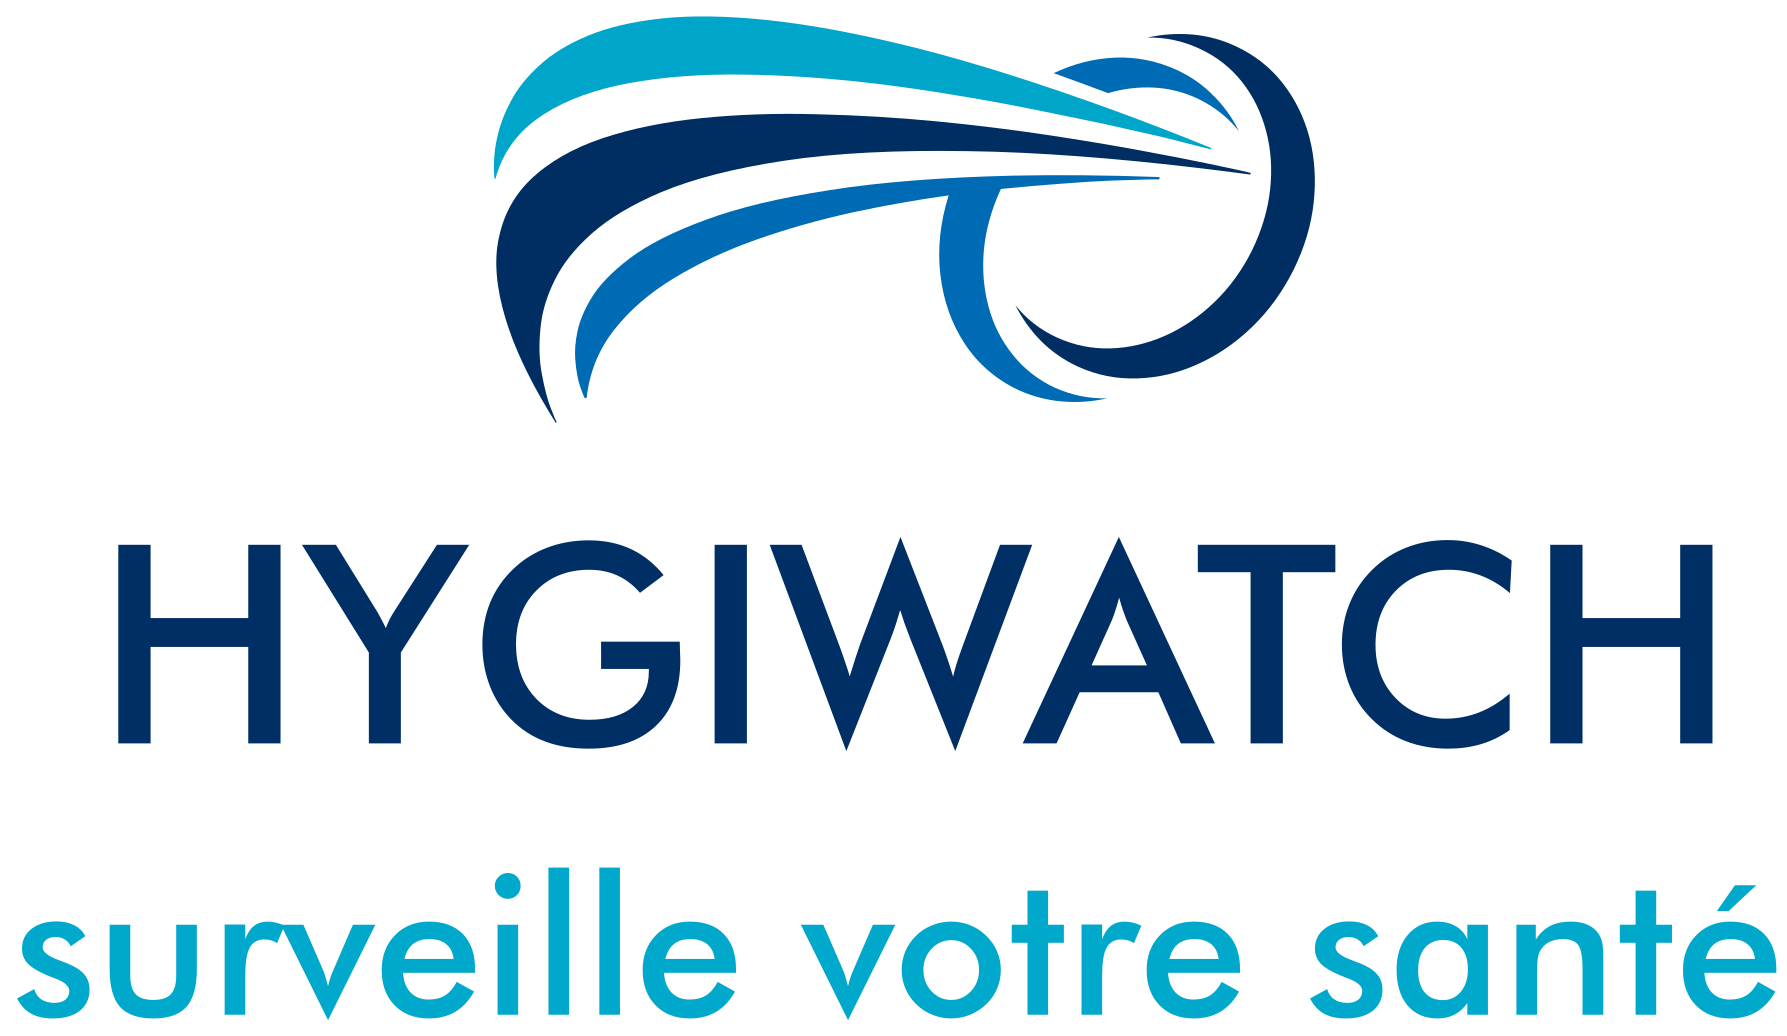 Hygiwatch